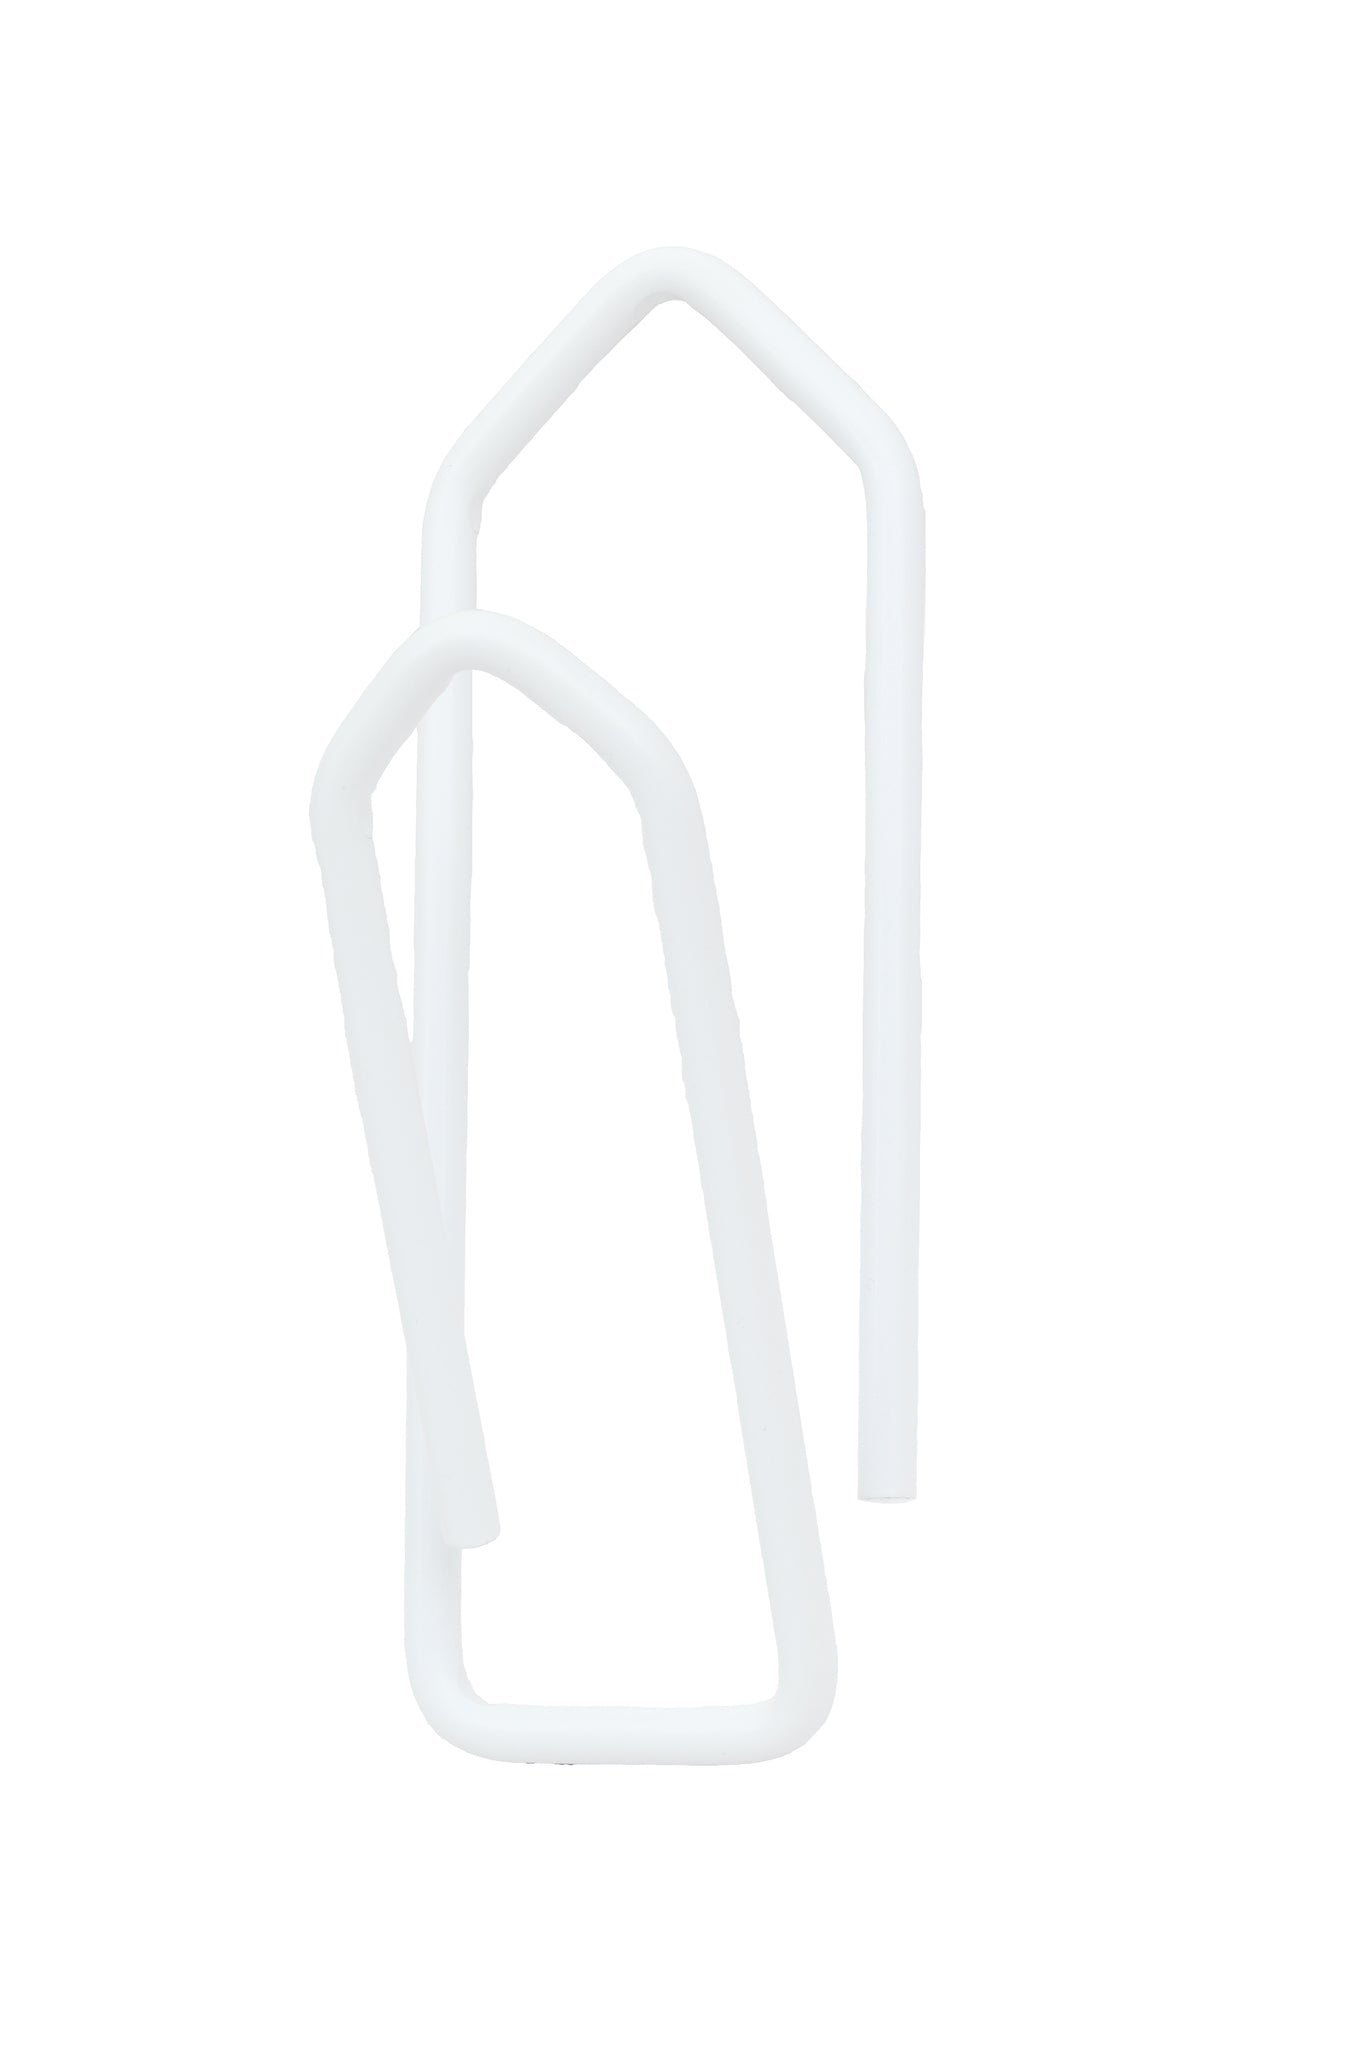 Gem - Bottle holder / Ceiling hanger - Silkes Vit